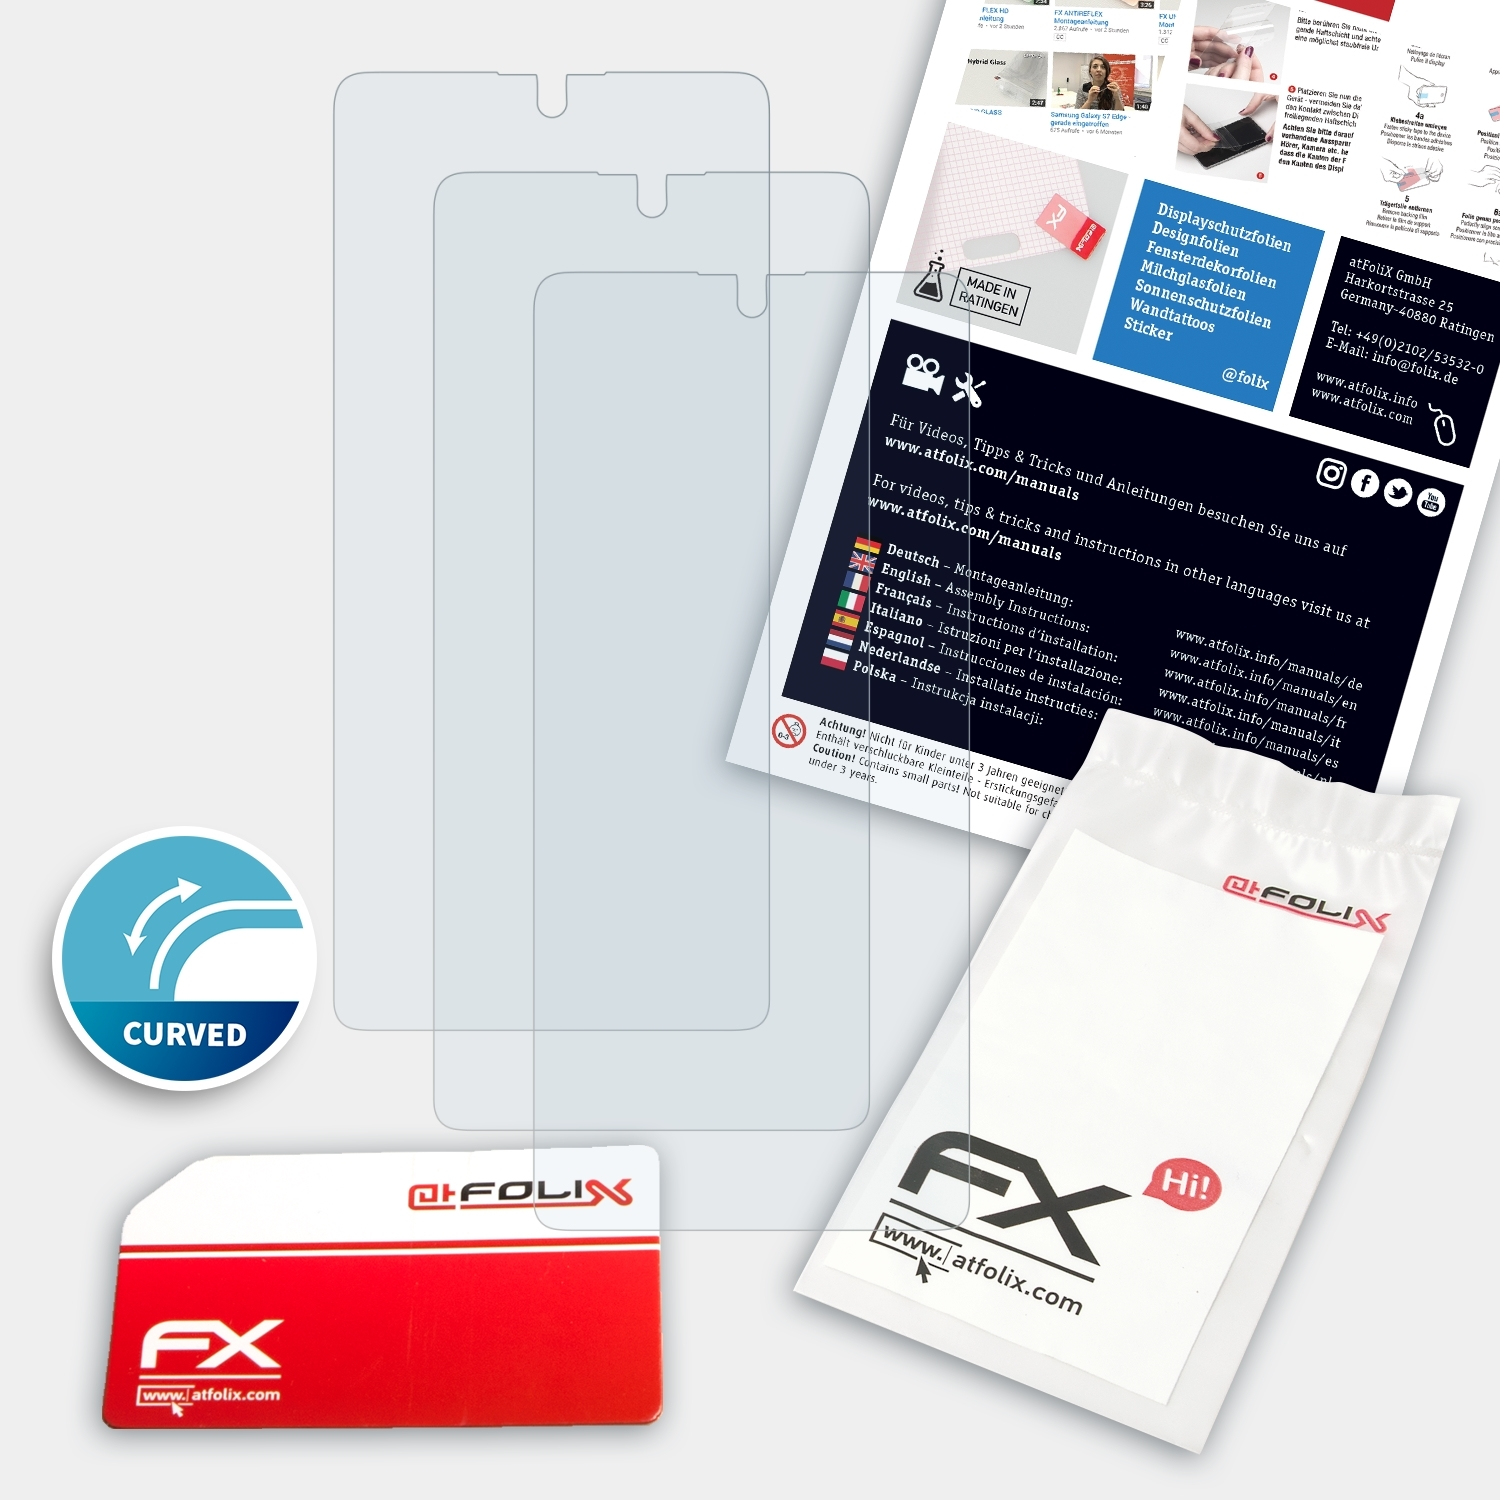 FX-ActiFleX Lite) ATFOLIX S10 Displayschutz(für Galaxy Samsung 3x